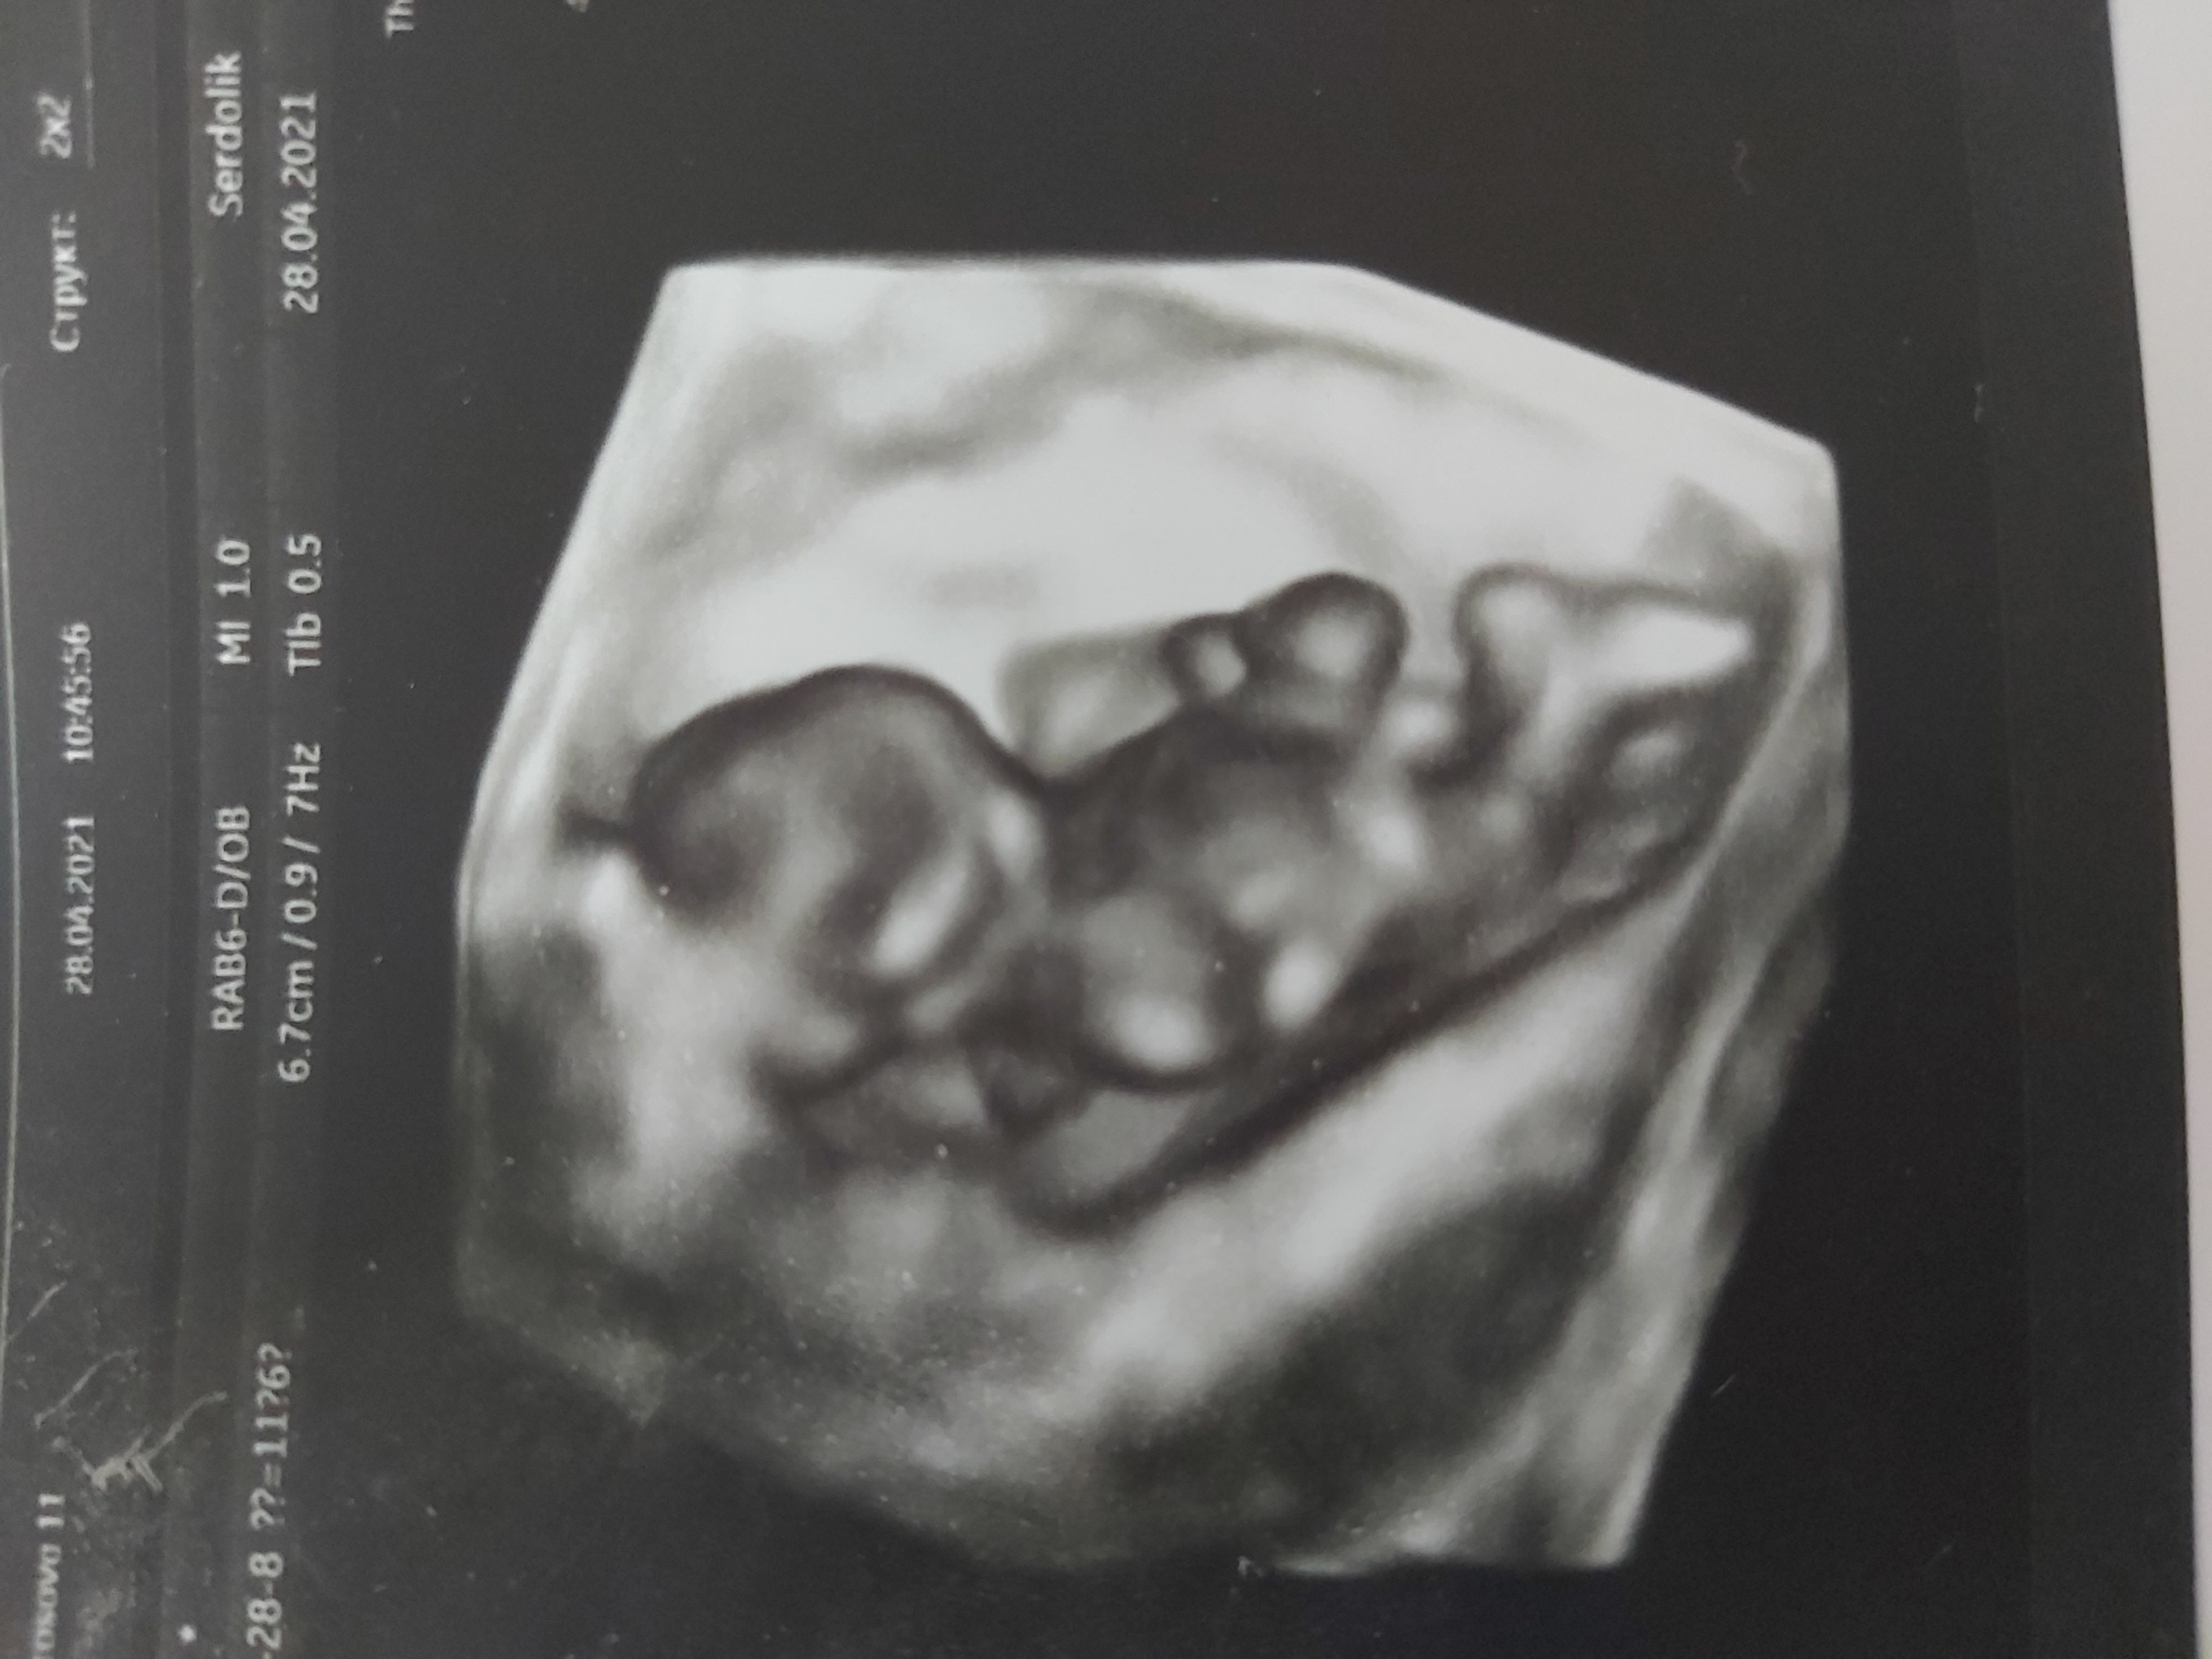 Всем ДД! Срок на фотках одинаковый, слева первая беременность. Справа ... image №2